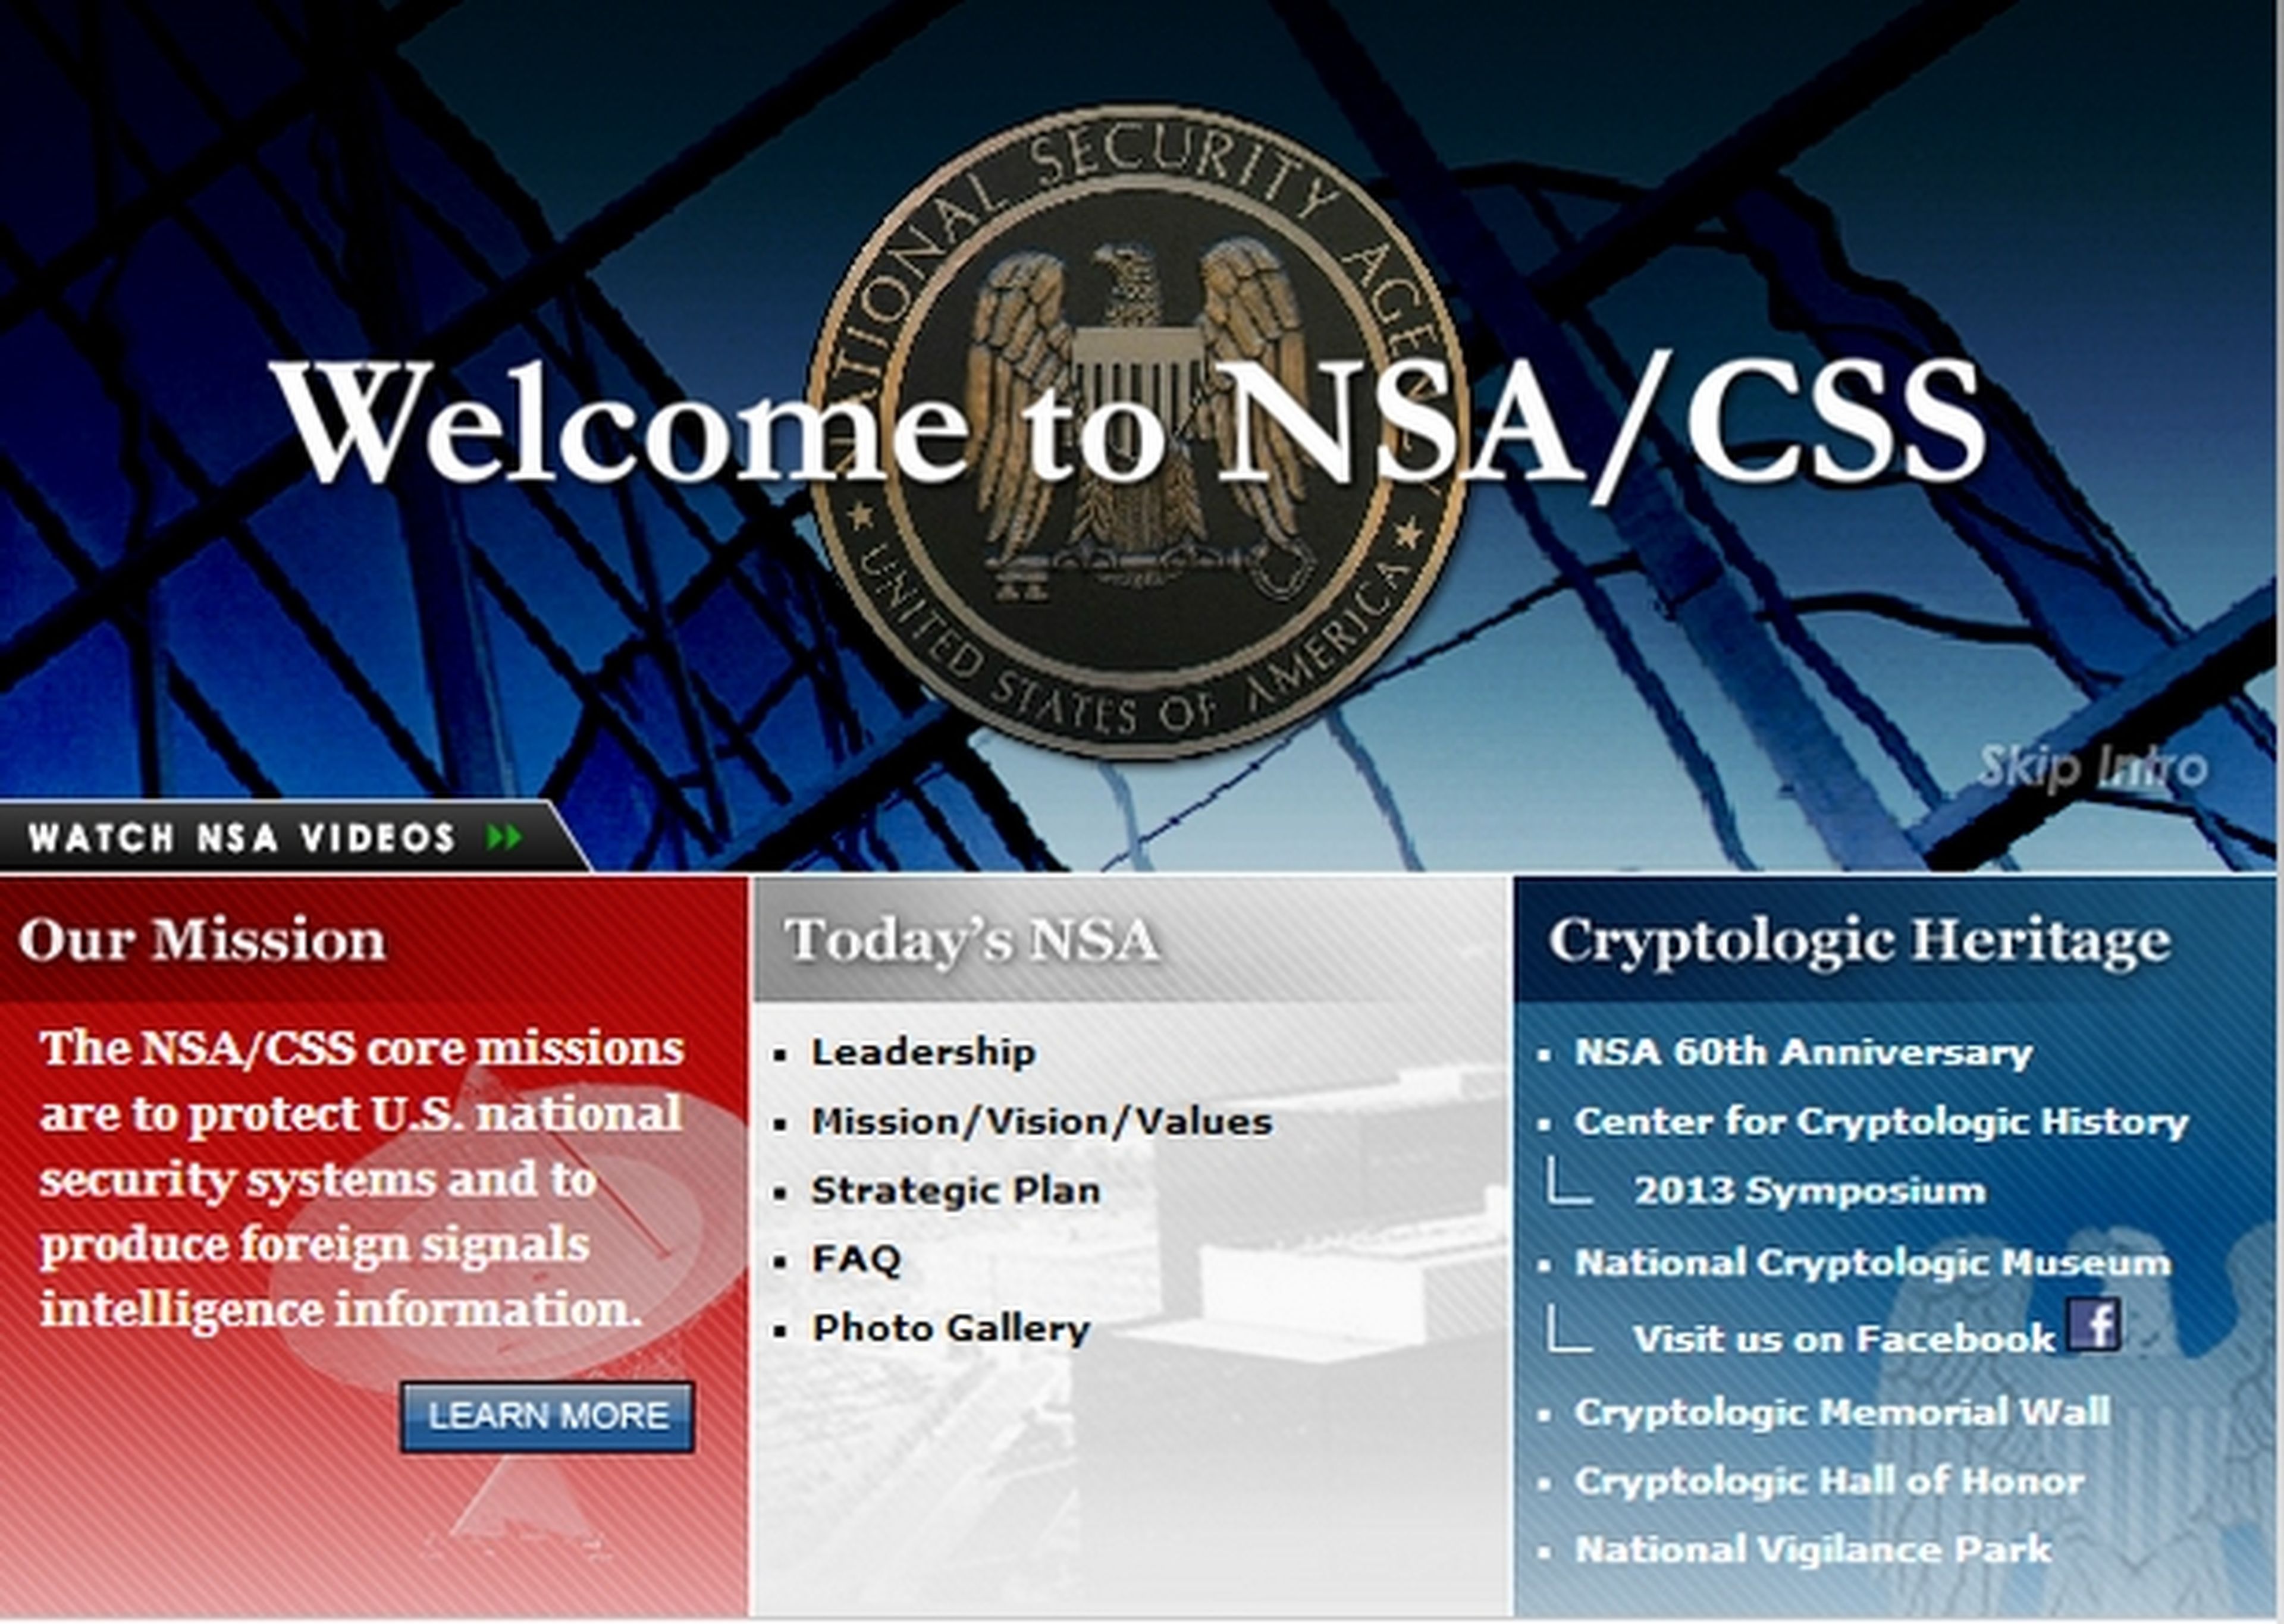 La web de la NSA caida. ¿Comienza la ciberguerra?